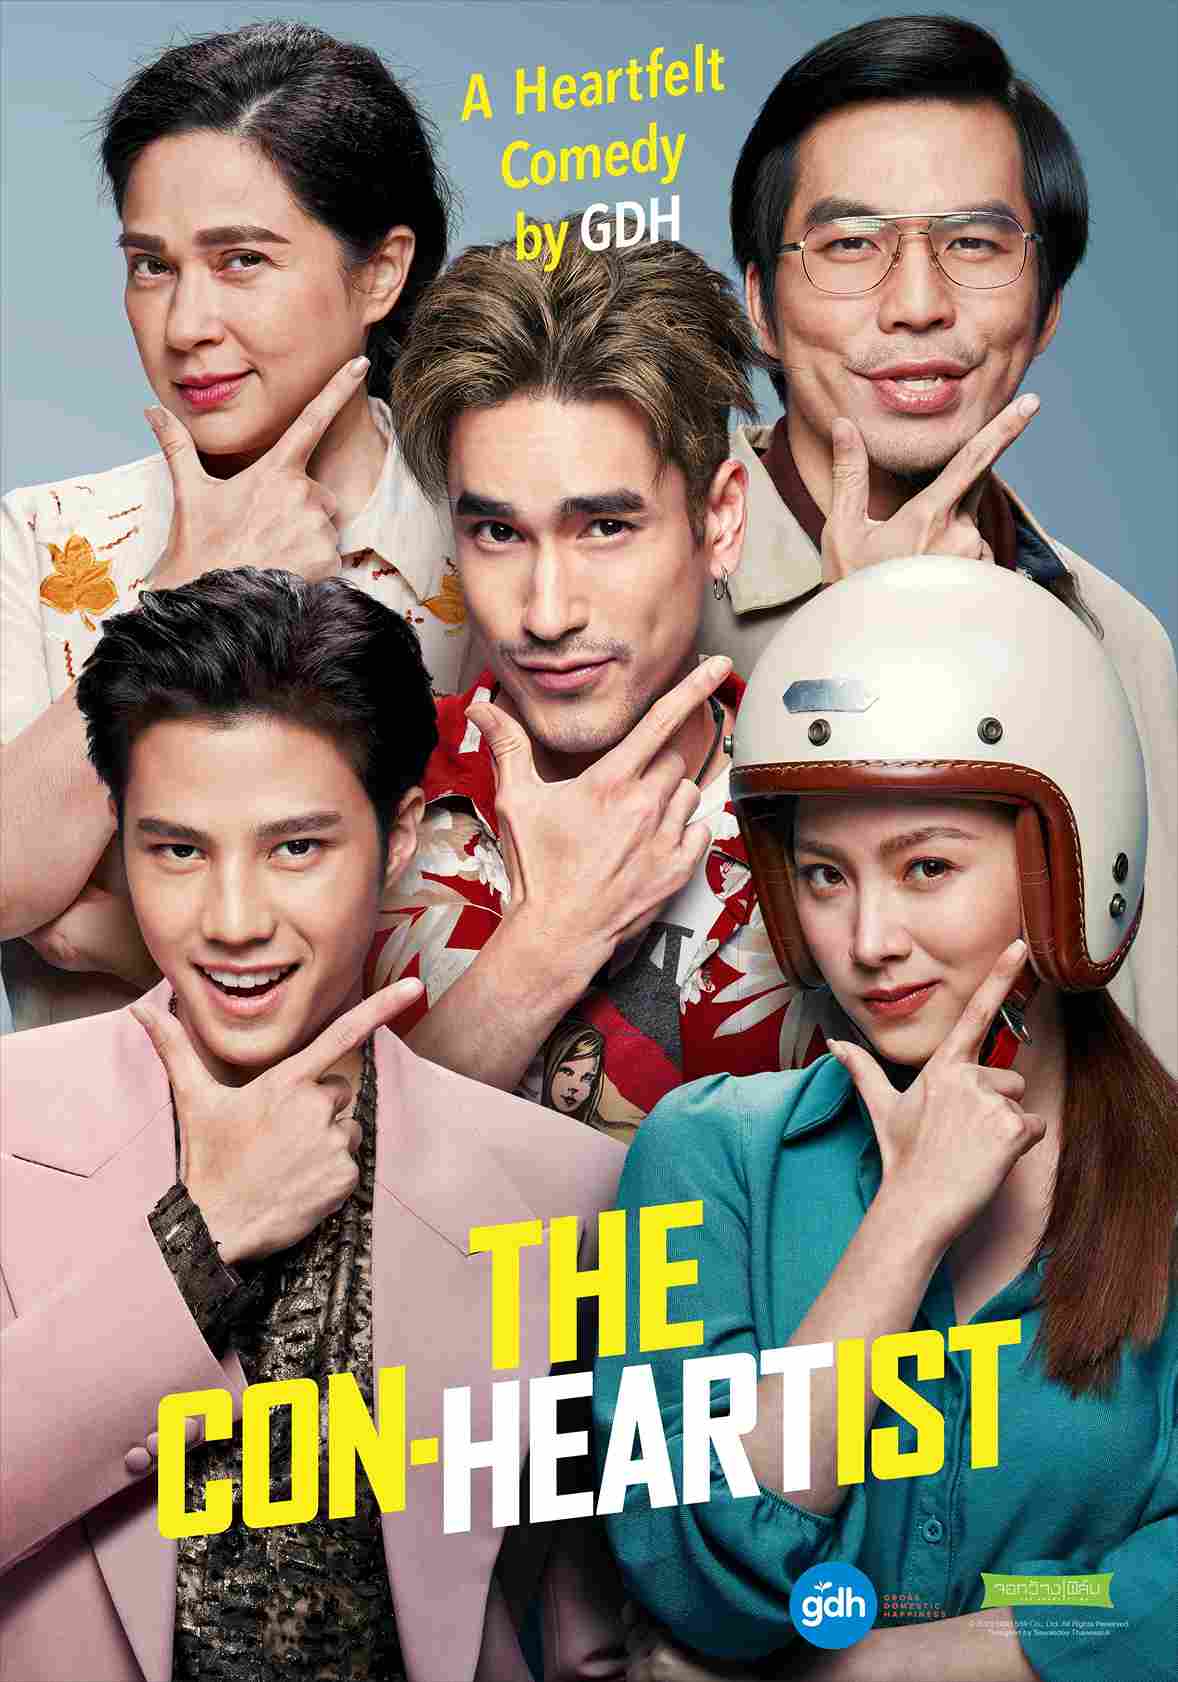 The Con-Heartist. Film komedi. Film komedi Thailand. Film Thailand. Rekomendasi film Thailand.